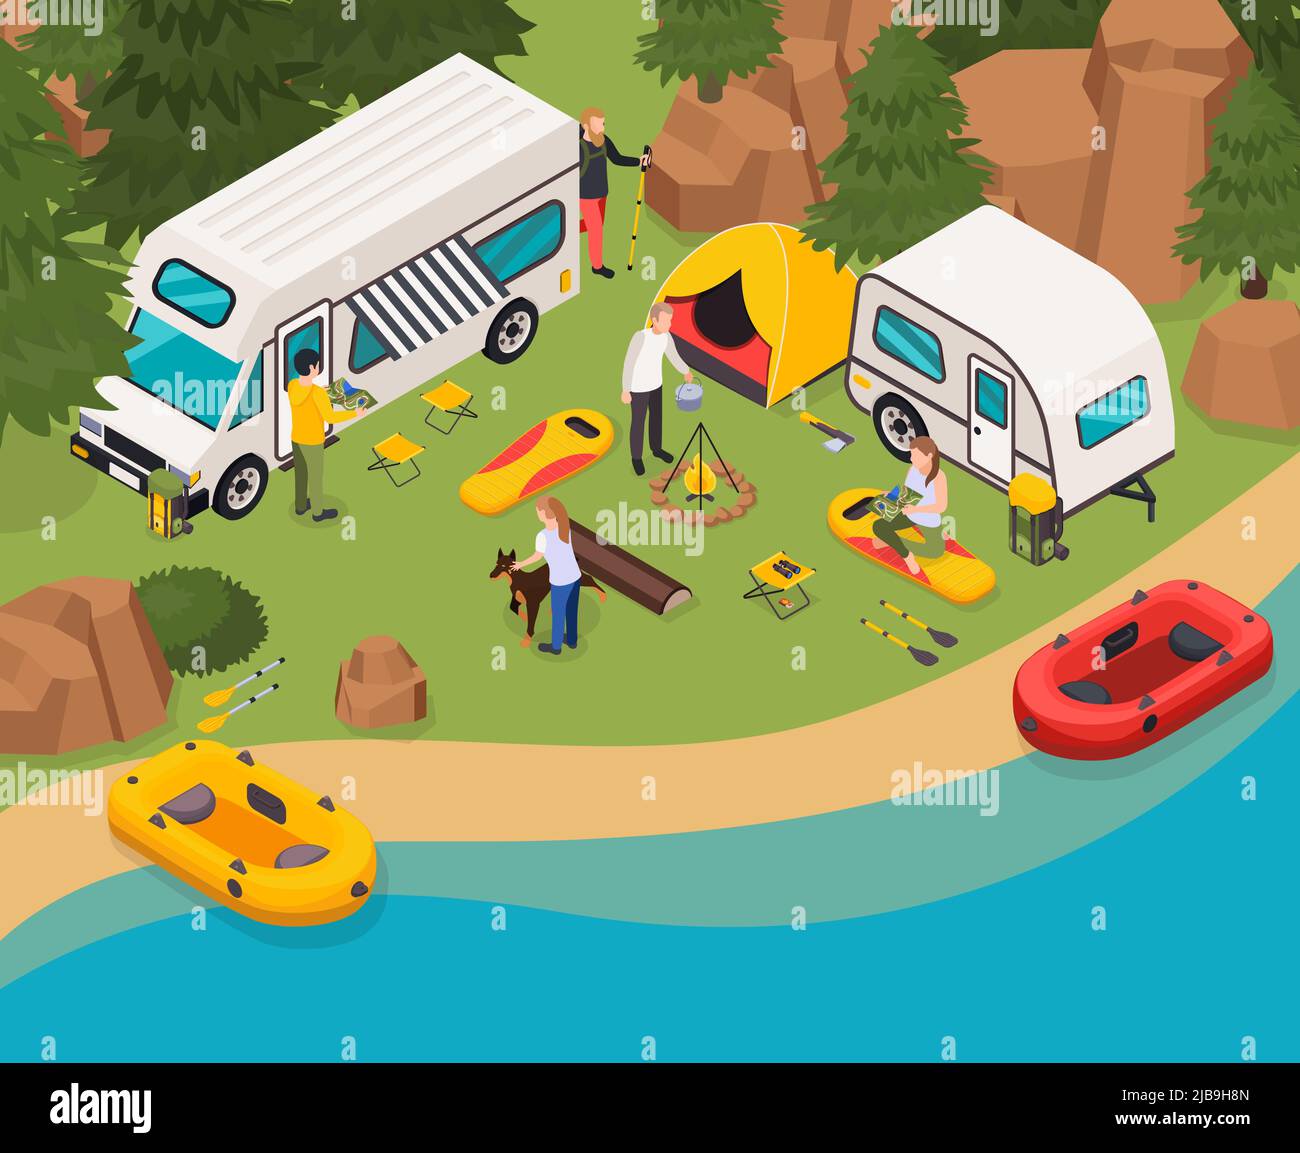 Wandern Touristen Camping Urlaub isometrische Zusammensetzung mit Camper Zelt Lagerfeuer Kochen Campingplatz in der Nähe von Flussbooten Vektor-Illustration Stock Vektor